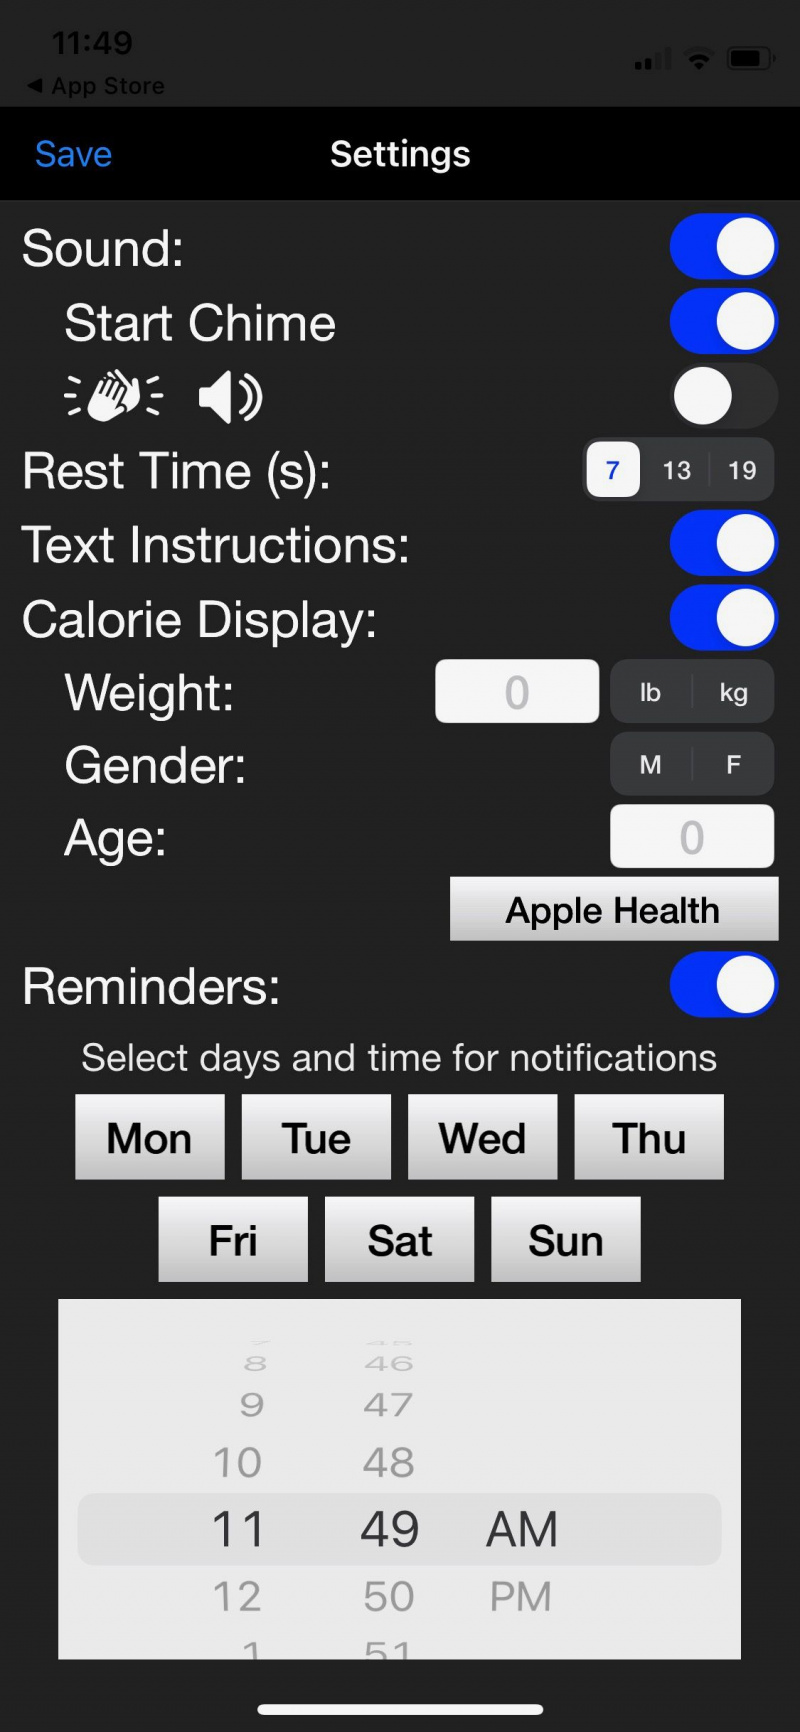   צילום מסך של שרירי בטן יומי המציג את הגדרות האפליקציה